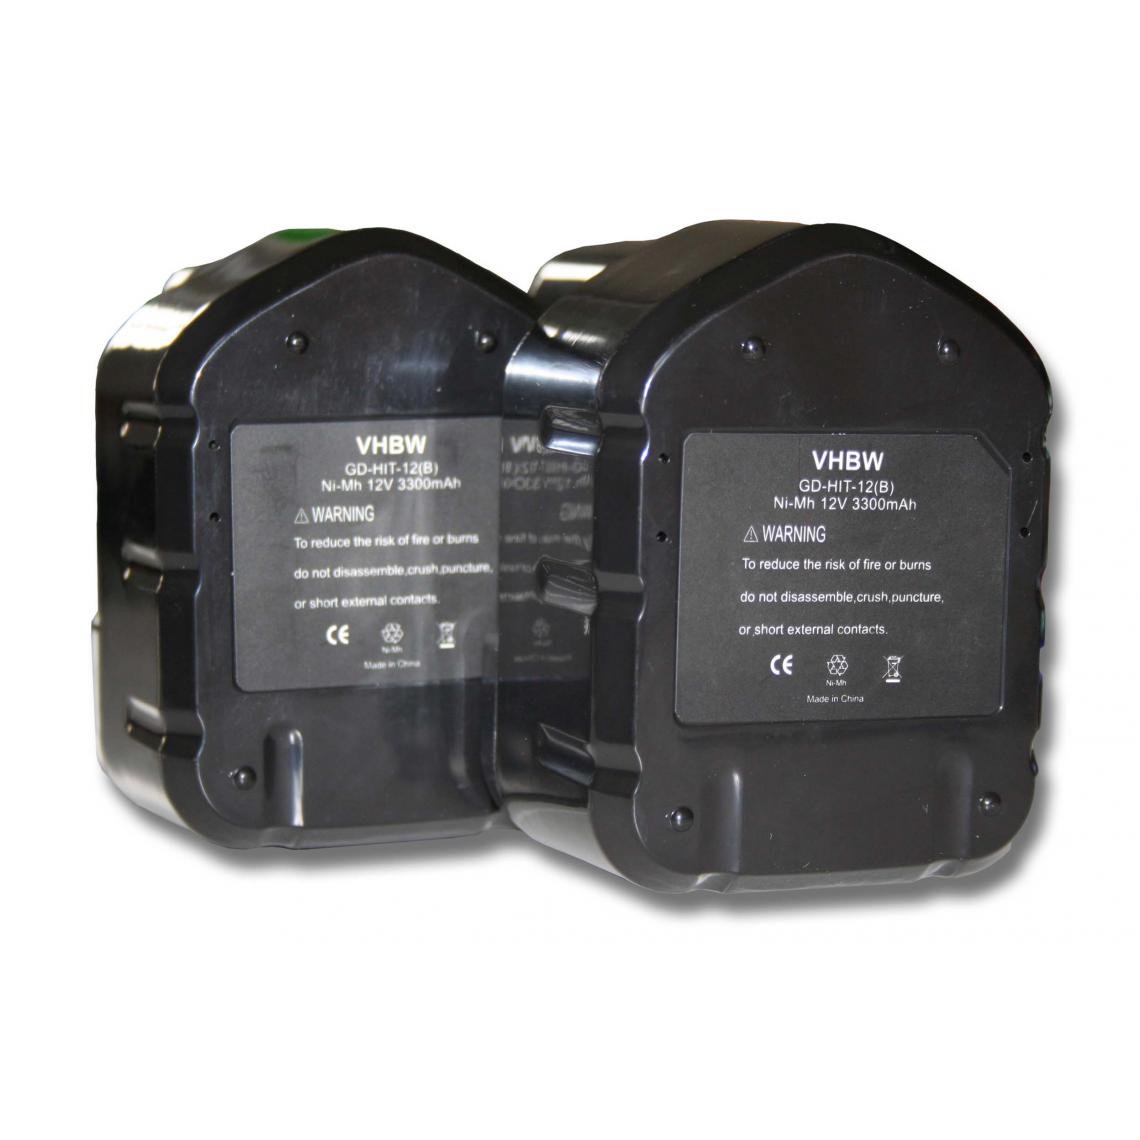 Vhbw - 2x Batterie Ni-MH 3300mAh (12V) vhbw pour outils WR 12DAF, WR 12DAF2, WR 12DM, WR 12DM2 comme Hitachi 320386, 320387, 320388, 320606, 320608. - Accessoires vissage, perçage